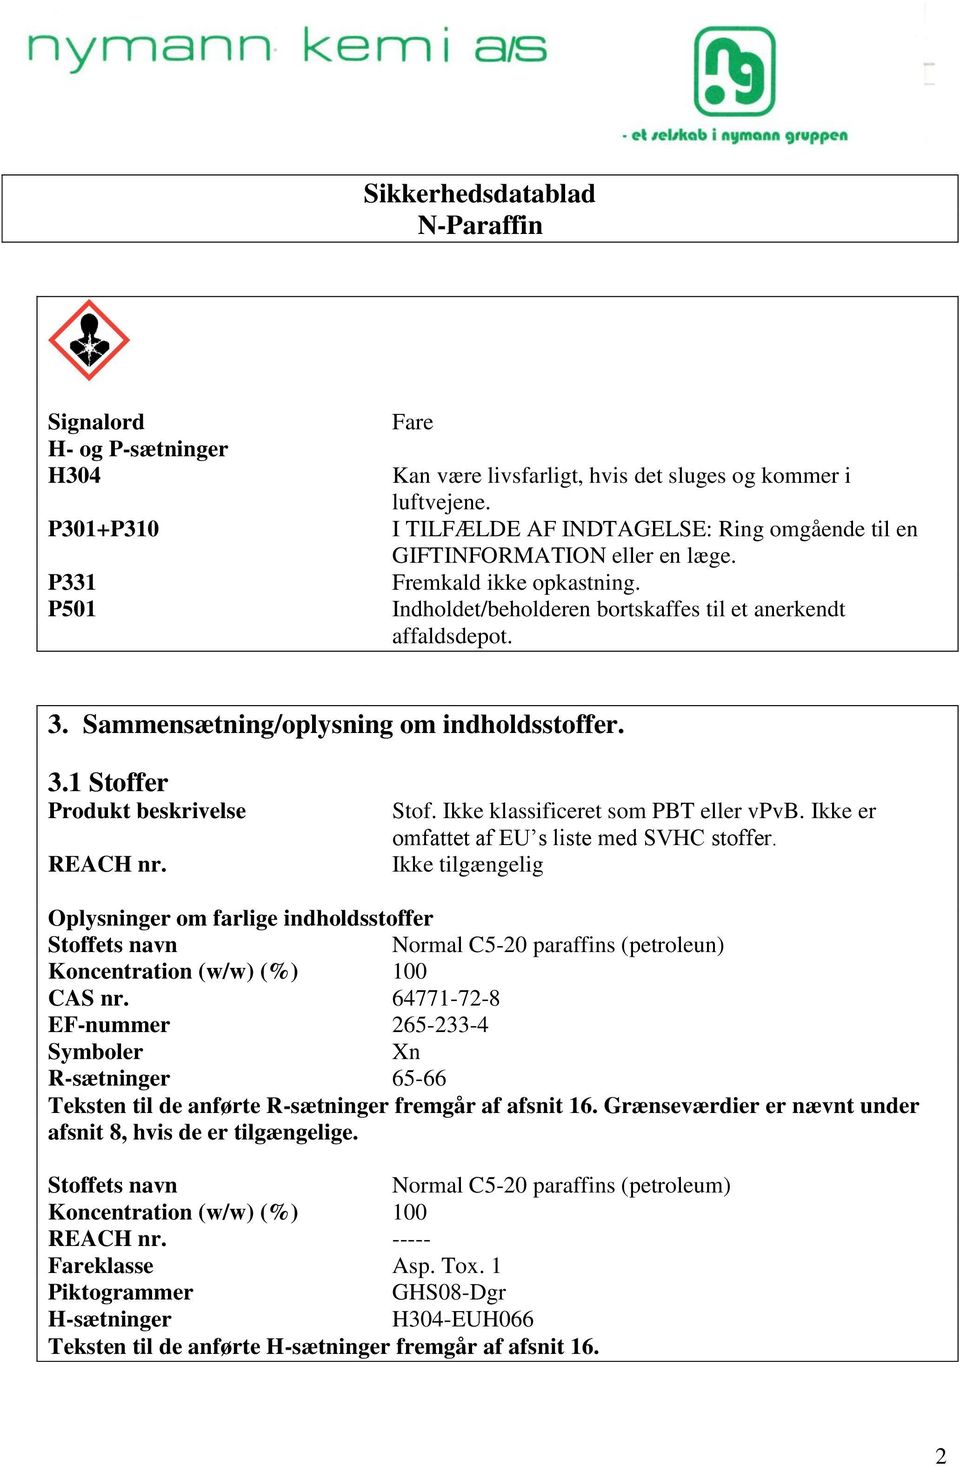 Ikke er omfattet af EU s liste med SVHC stoffer. Ikke tilgængelig Oplysninger om farlige indholdsstoffer Stoffets navn Normal C5-20 paraffins (petroleun) Koncentration (w/w) (%) 100 CAS nr.